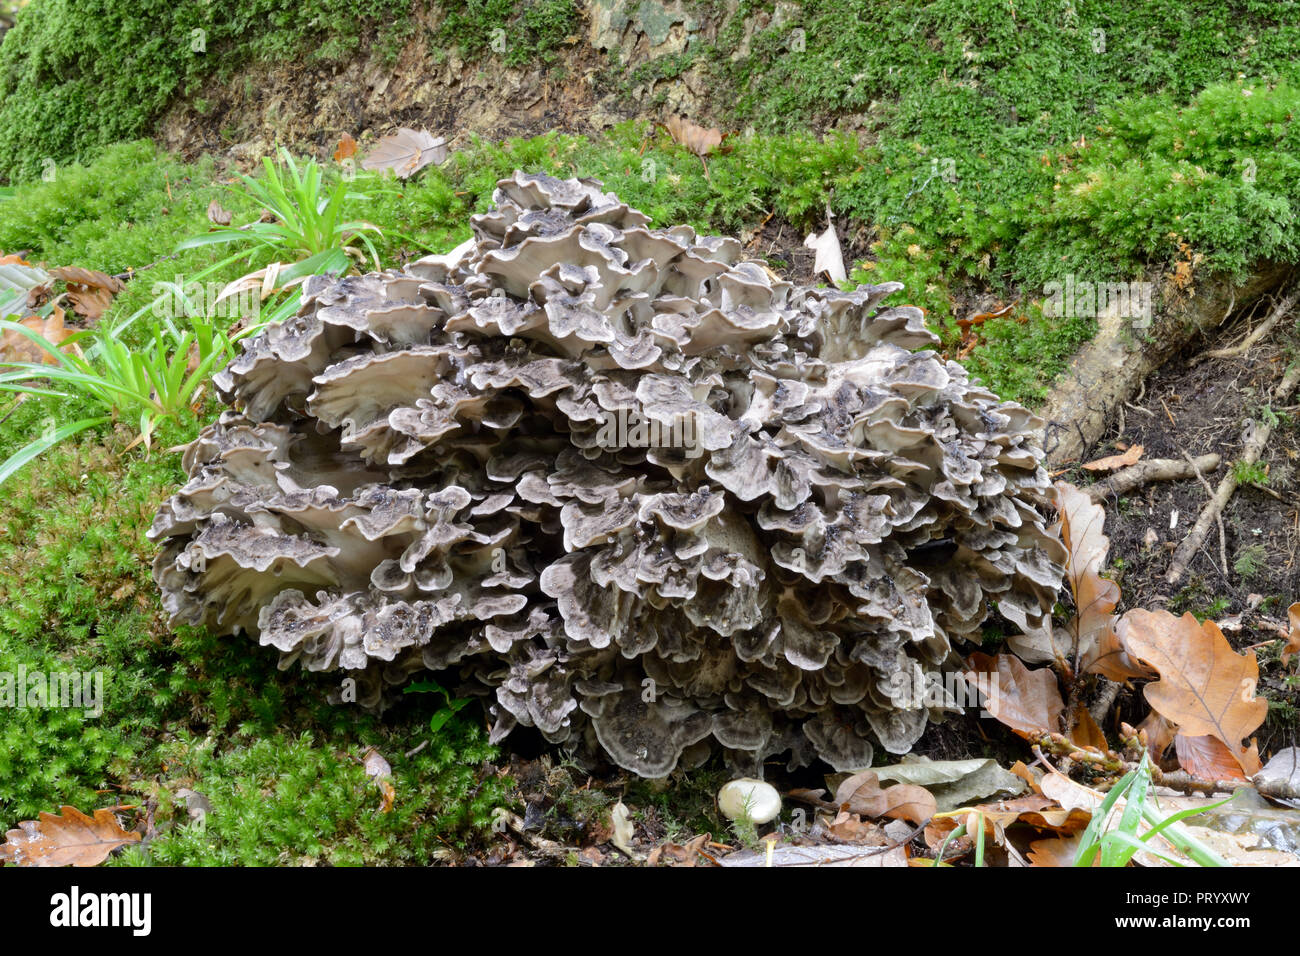 Grifola frondosa (gemeinhin als Henne der Wälder bekannt) ist eine polypore Pilz, der in Clustern wächst an der Basis der Bäume, die in der Regel aus Eiche. Stockfoto